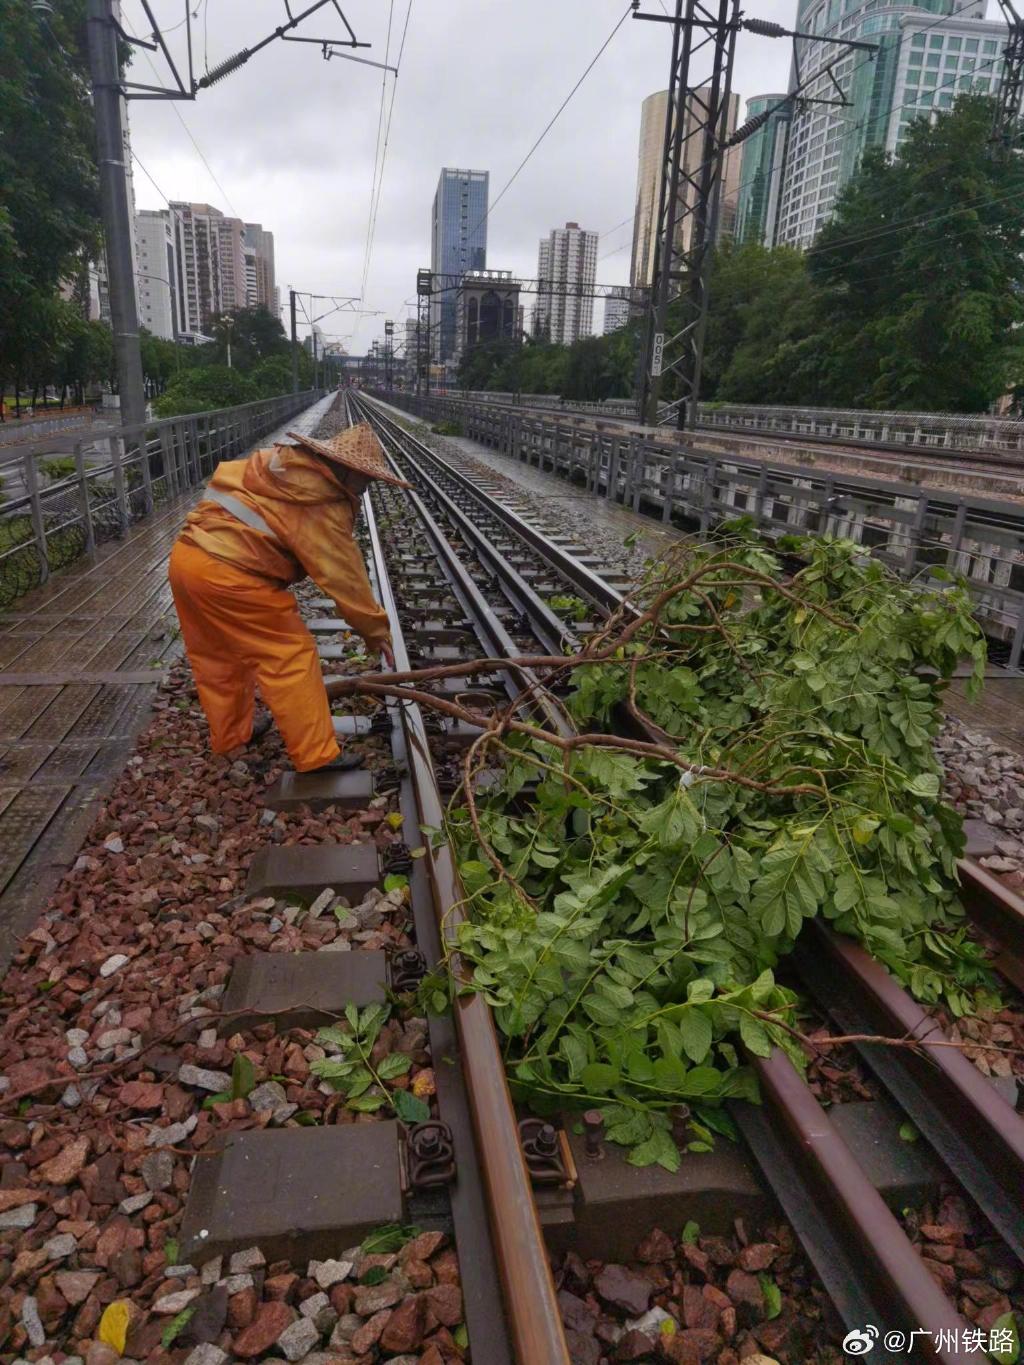 工人清理铁路上的杂物。